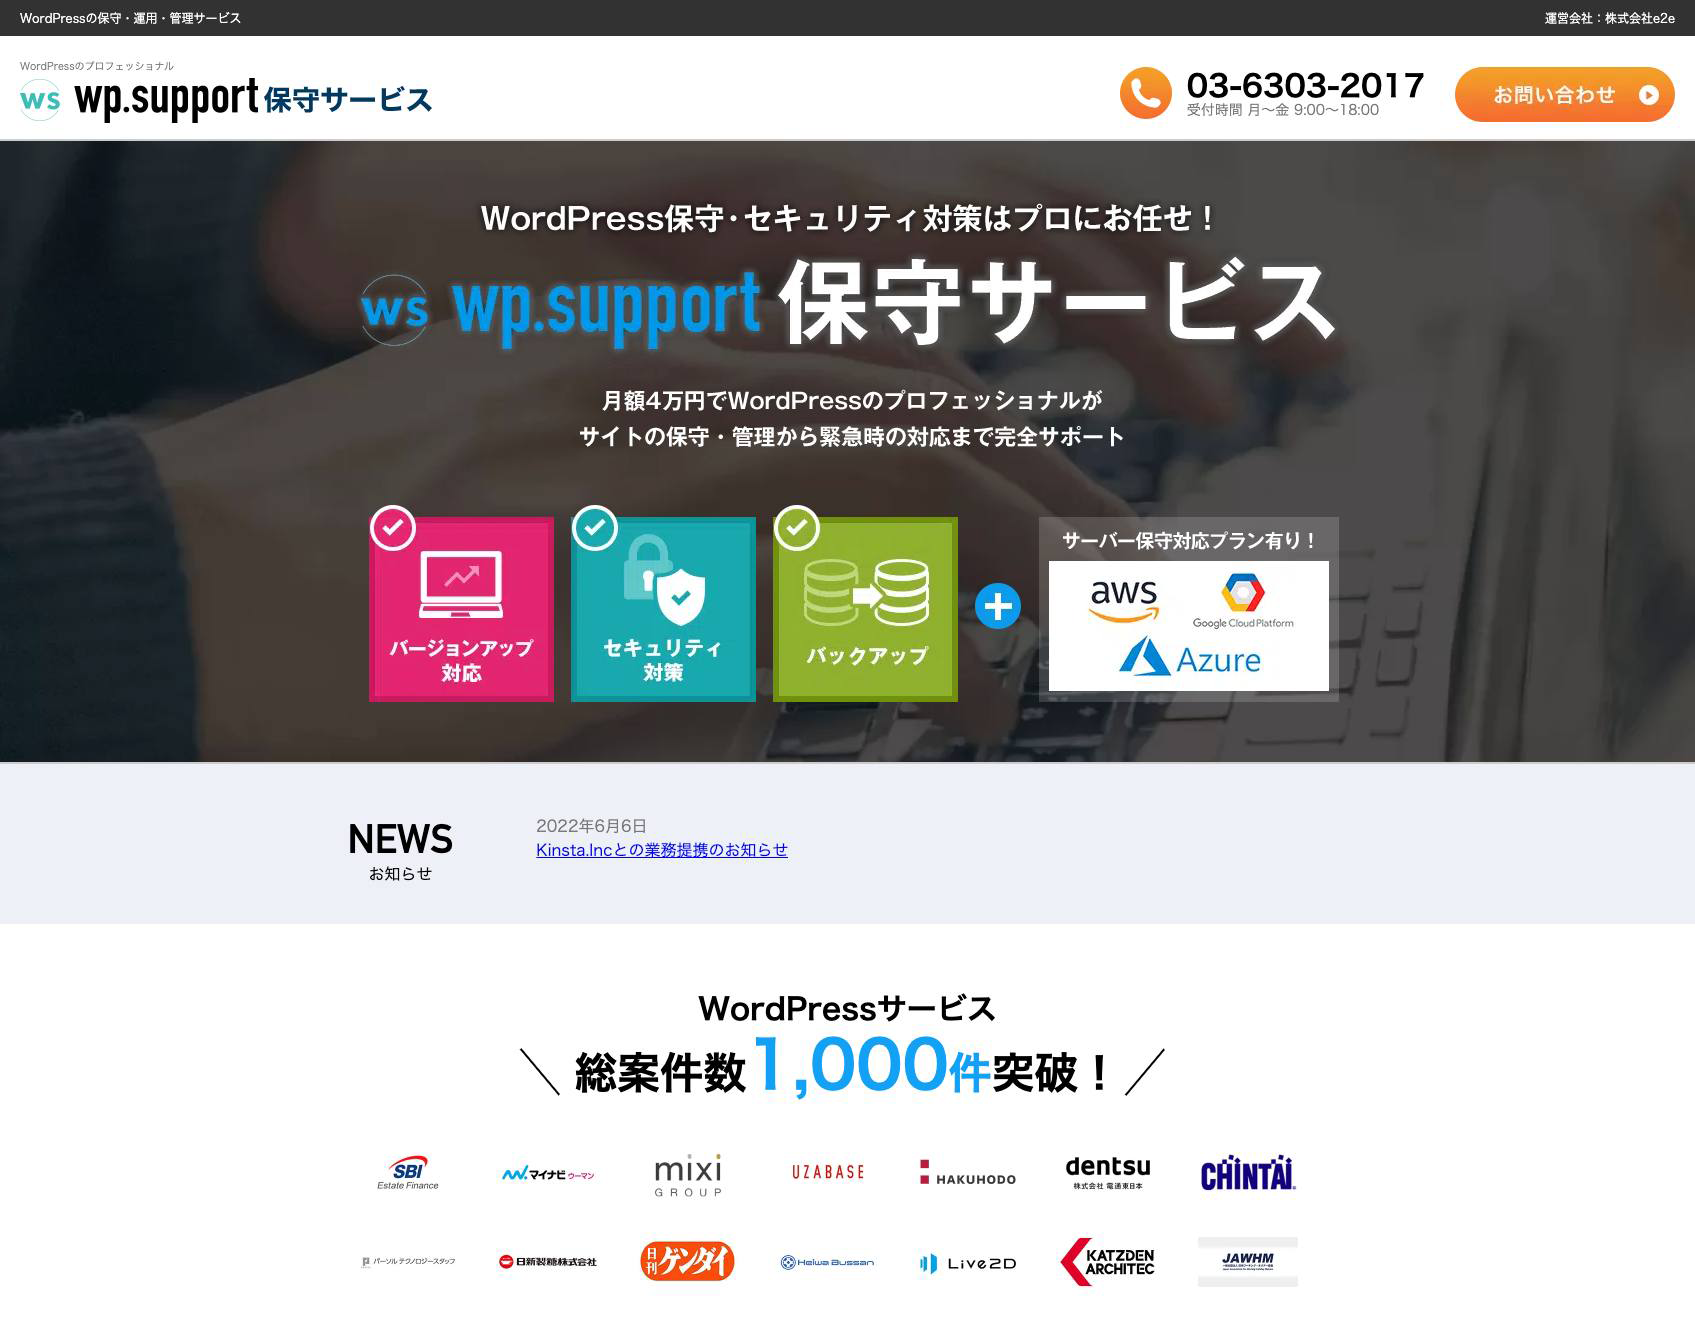 【株式会社e2e様】「wp.support保守サービス」ランディングページ制作